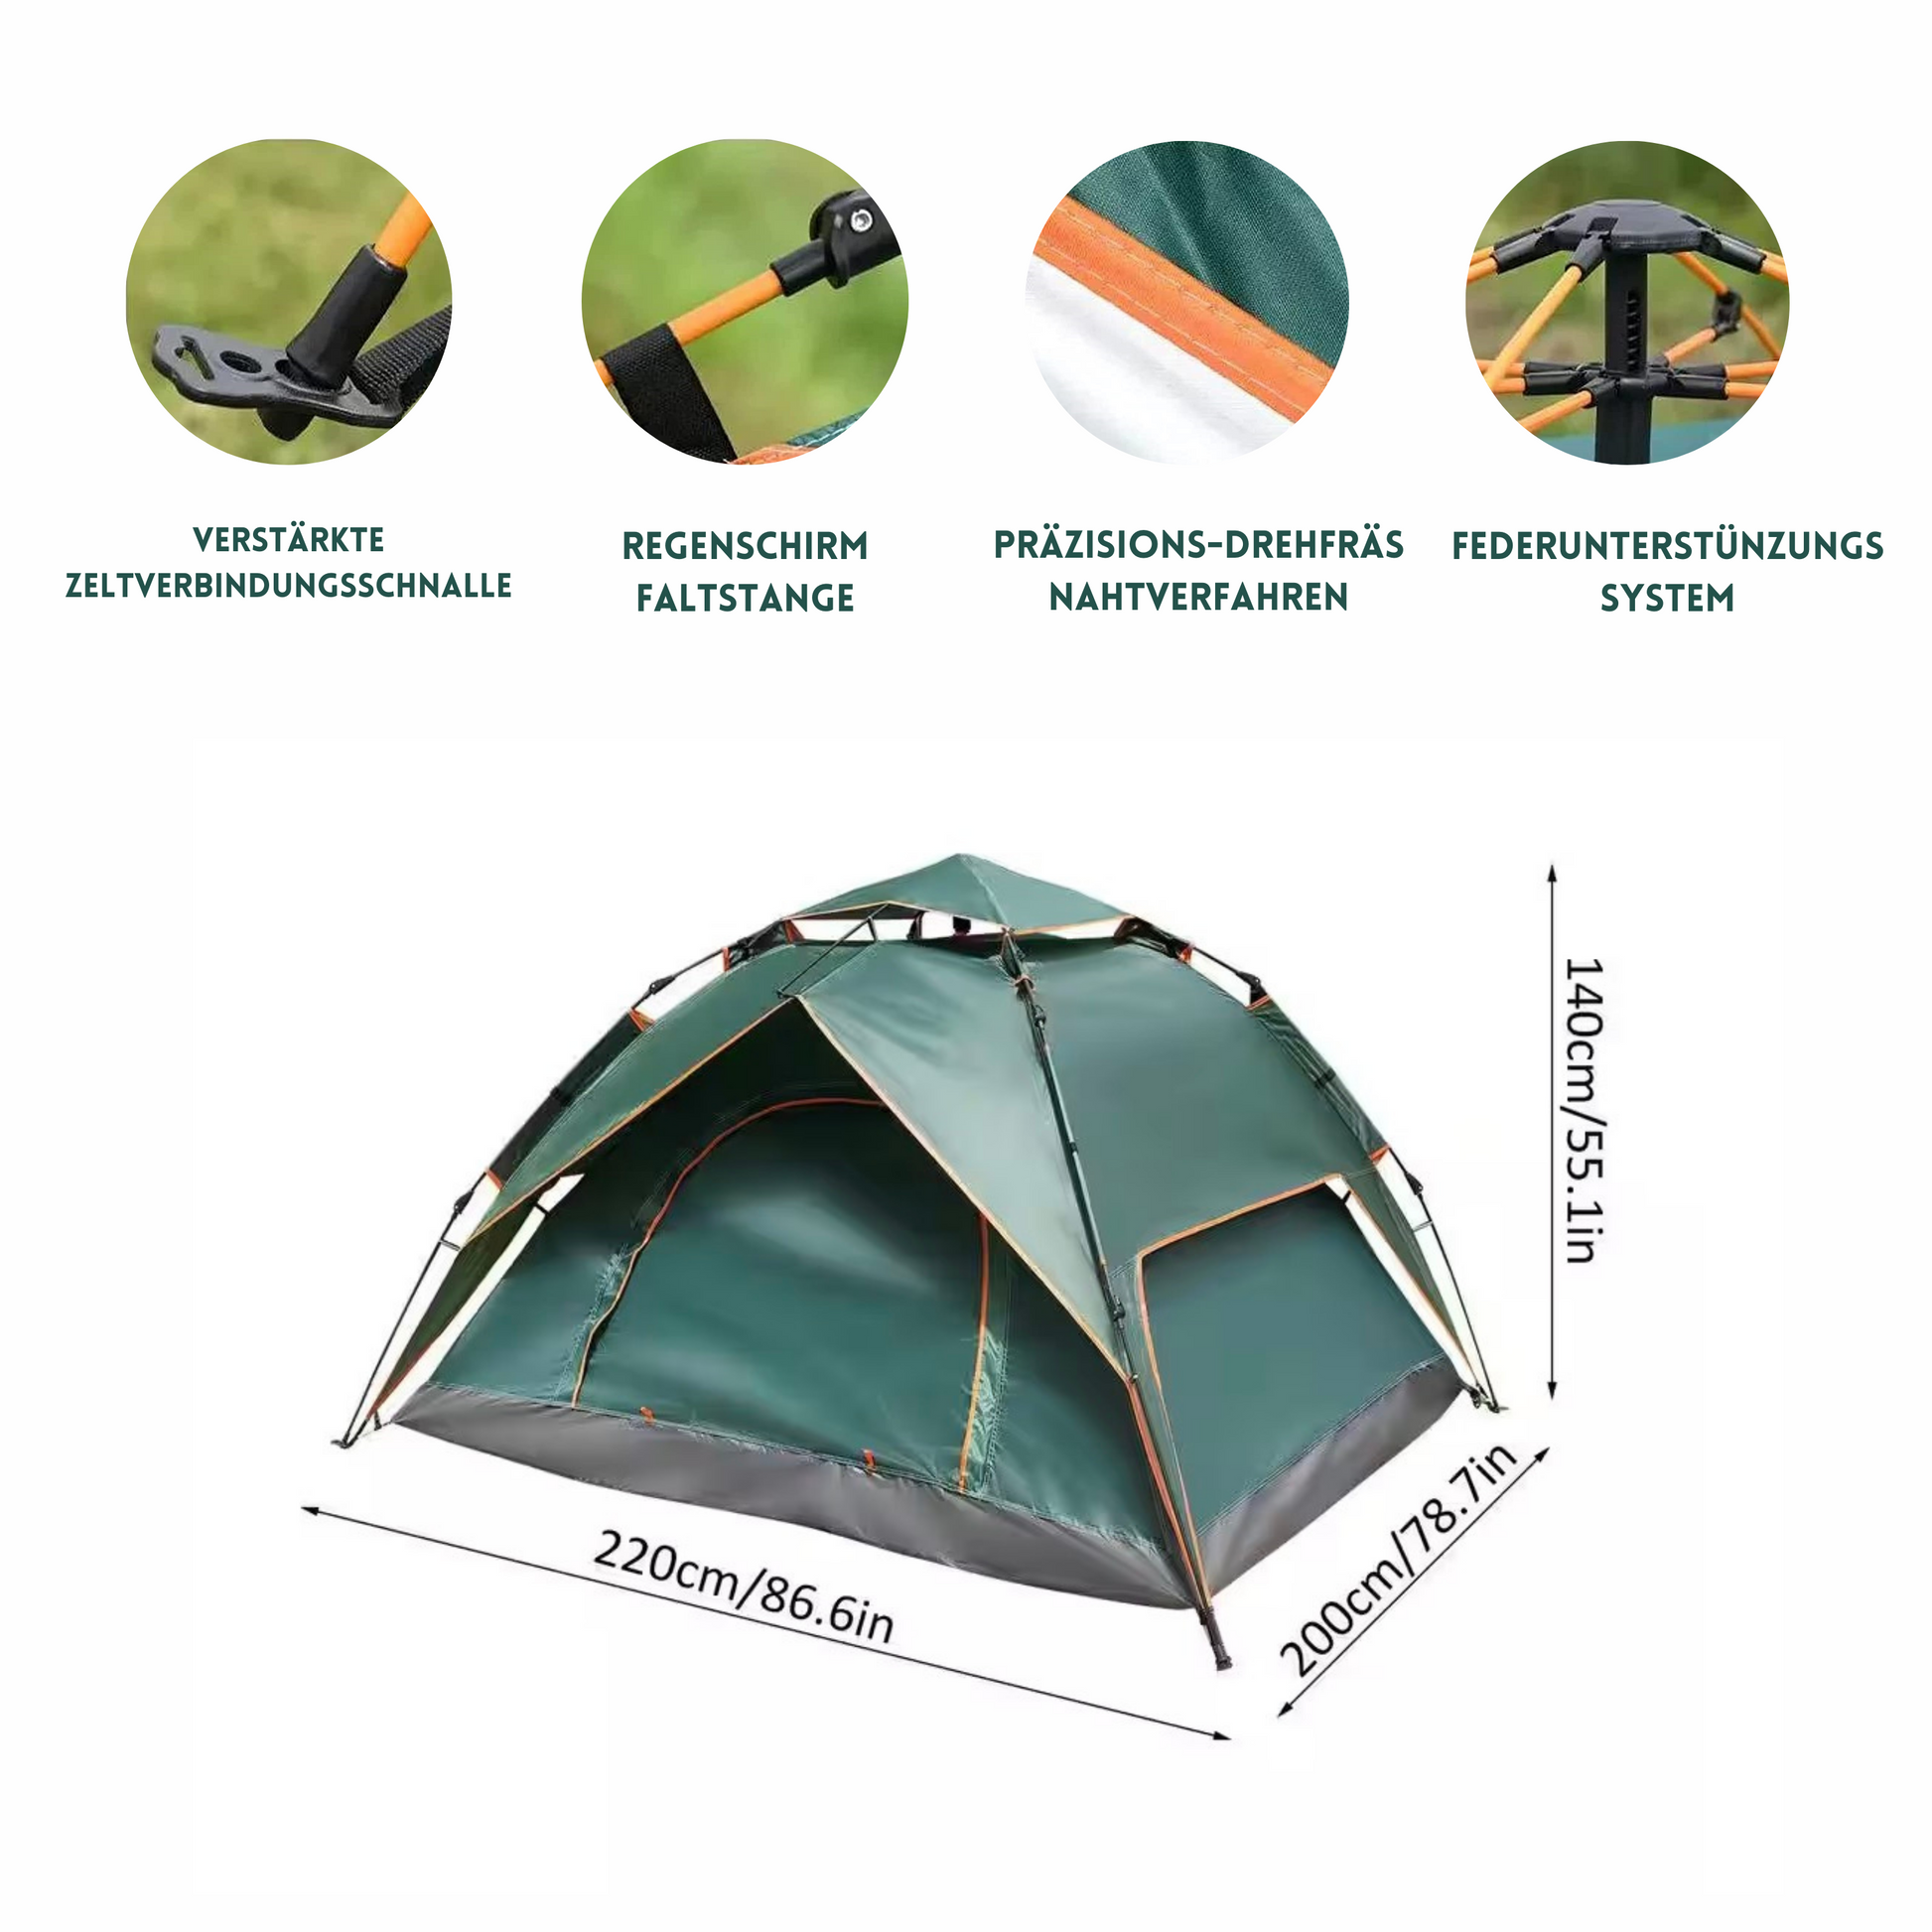 Peak Camping Zelt 3-4 Personen 2in1 Zelt Wurfzel Wasserdicht Schnellau –  OutletNow